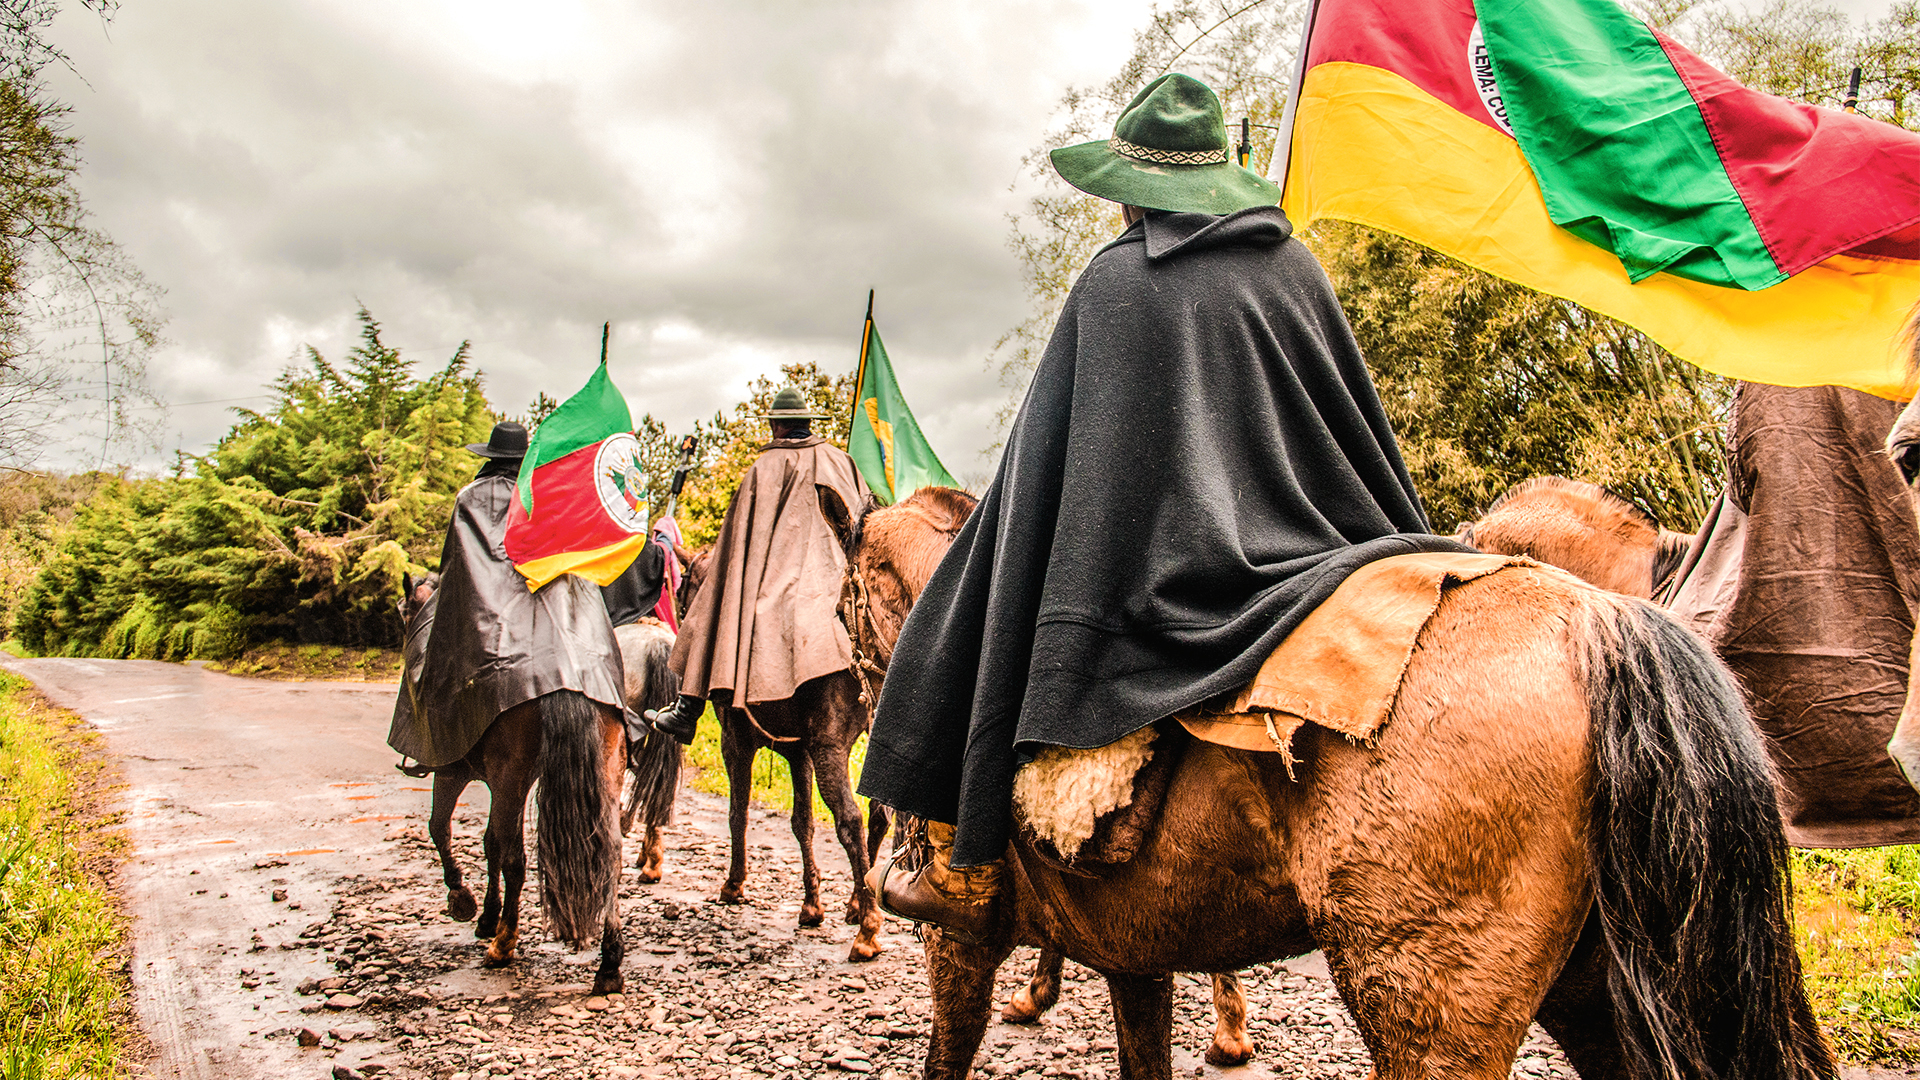 Homens trajados com roupas gauchescas montados em cavalos portando bandeiras do Rio Grande do Sul